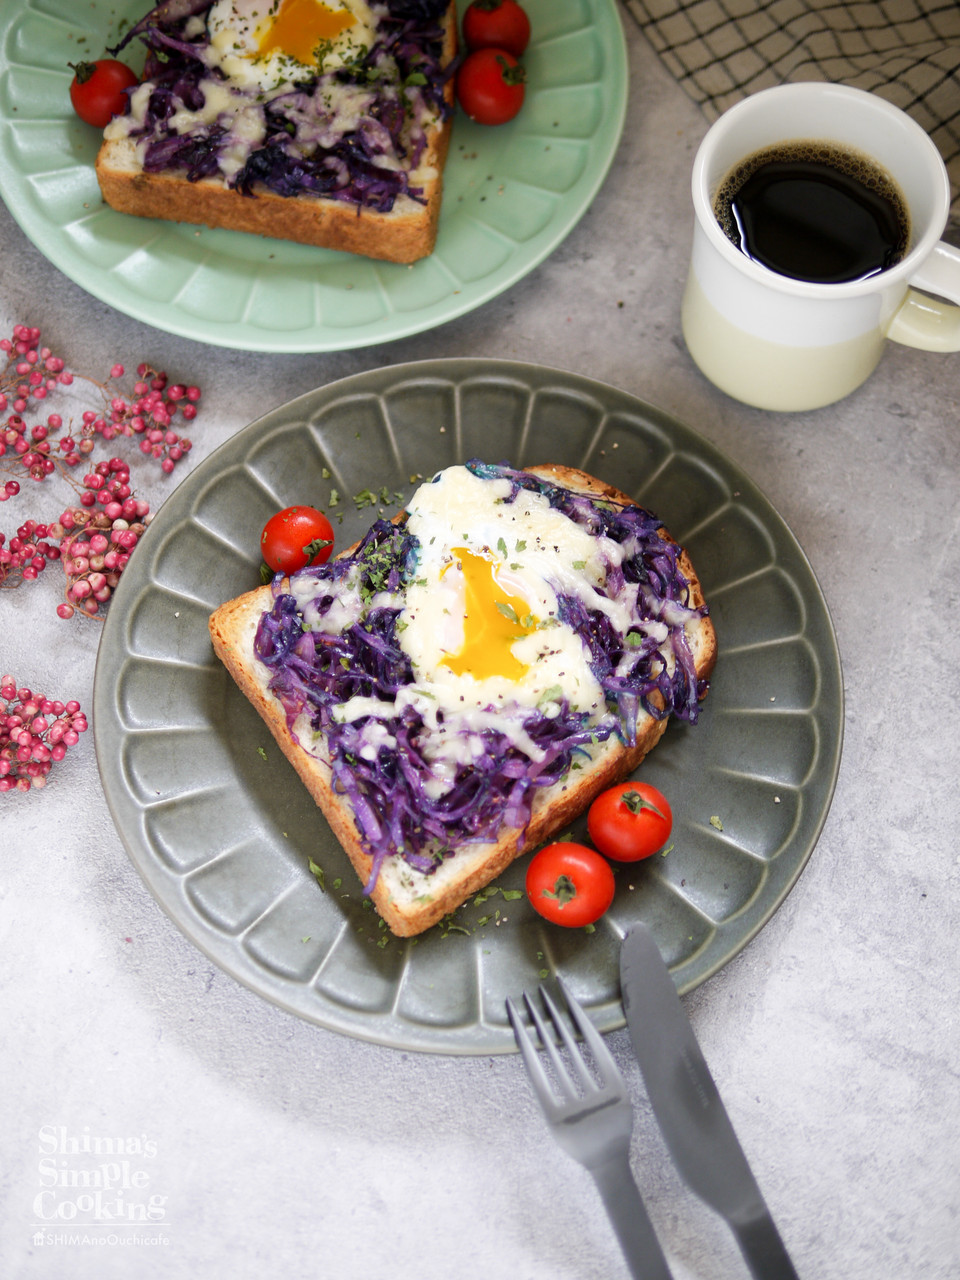 乗っけて焼くだけ なのにオシャレな朝ごはん 紫キャベツの巣ごもり卵トースト 自炊 トースト カフェ飯 朝ごはん 時短レシピ 簡単 節約 おしゃレシピ Shimaのオウチカフェ Powered By ライブドアブログ